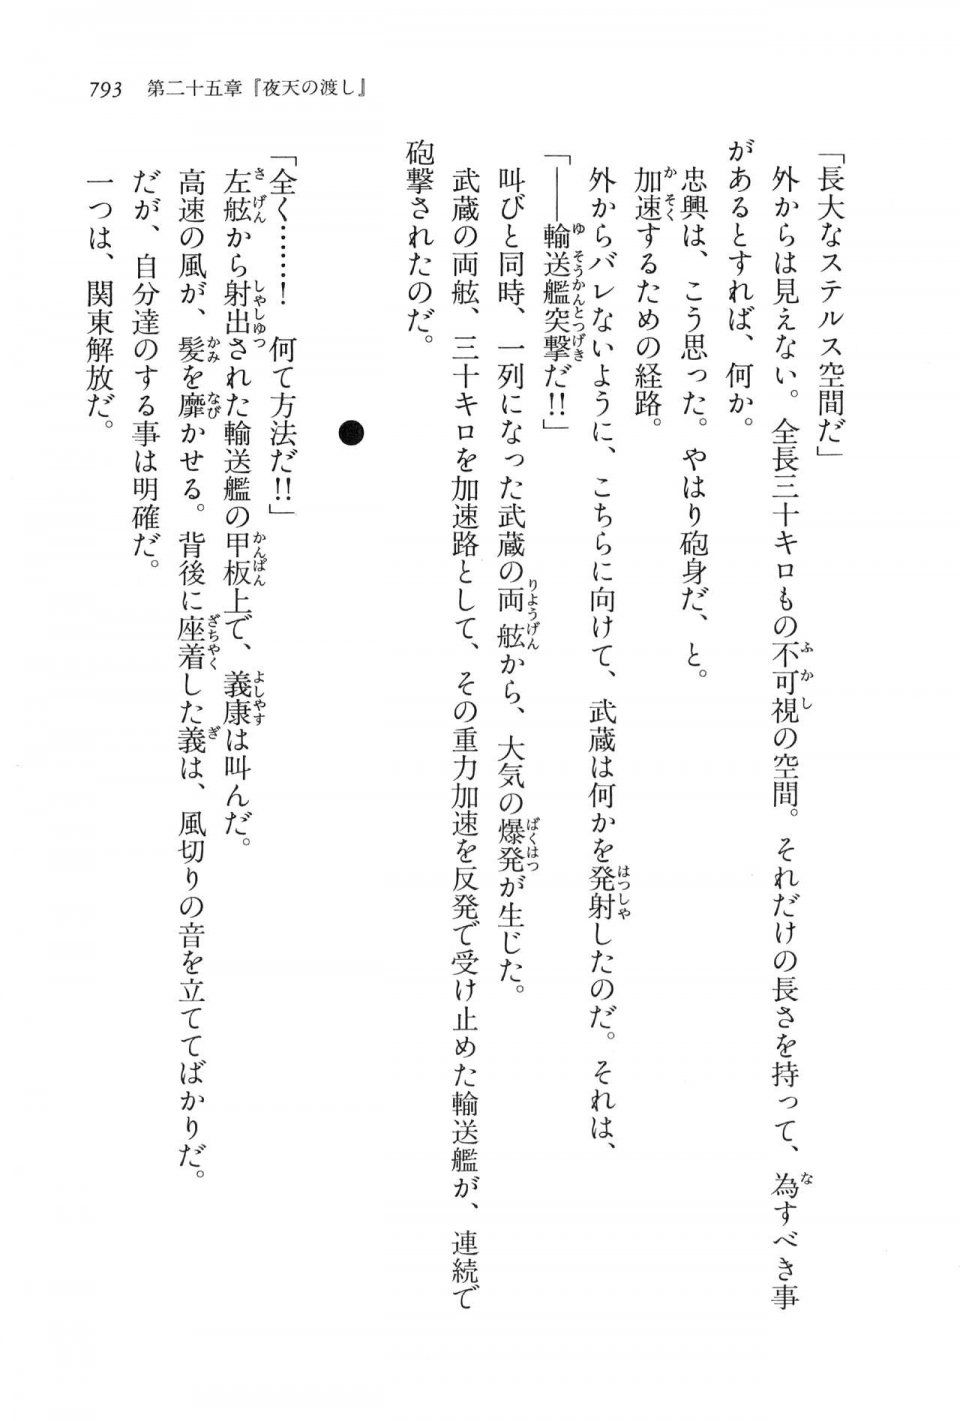 Kyoukai Senjou no Horizon LN Vol 16(7A) - Photo #793